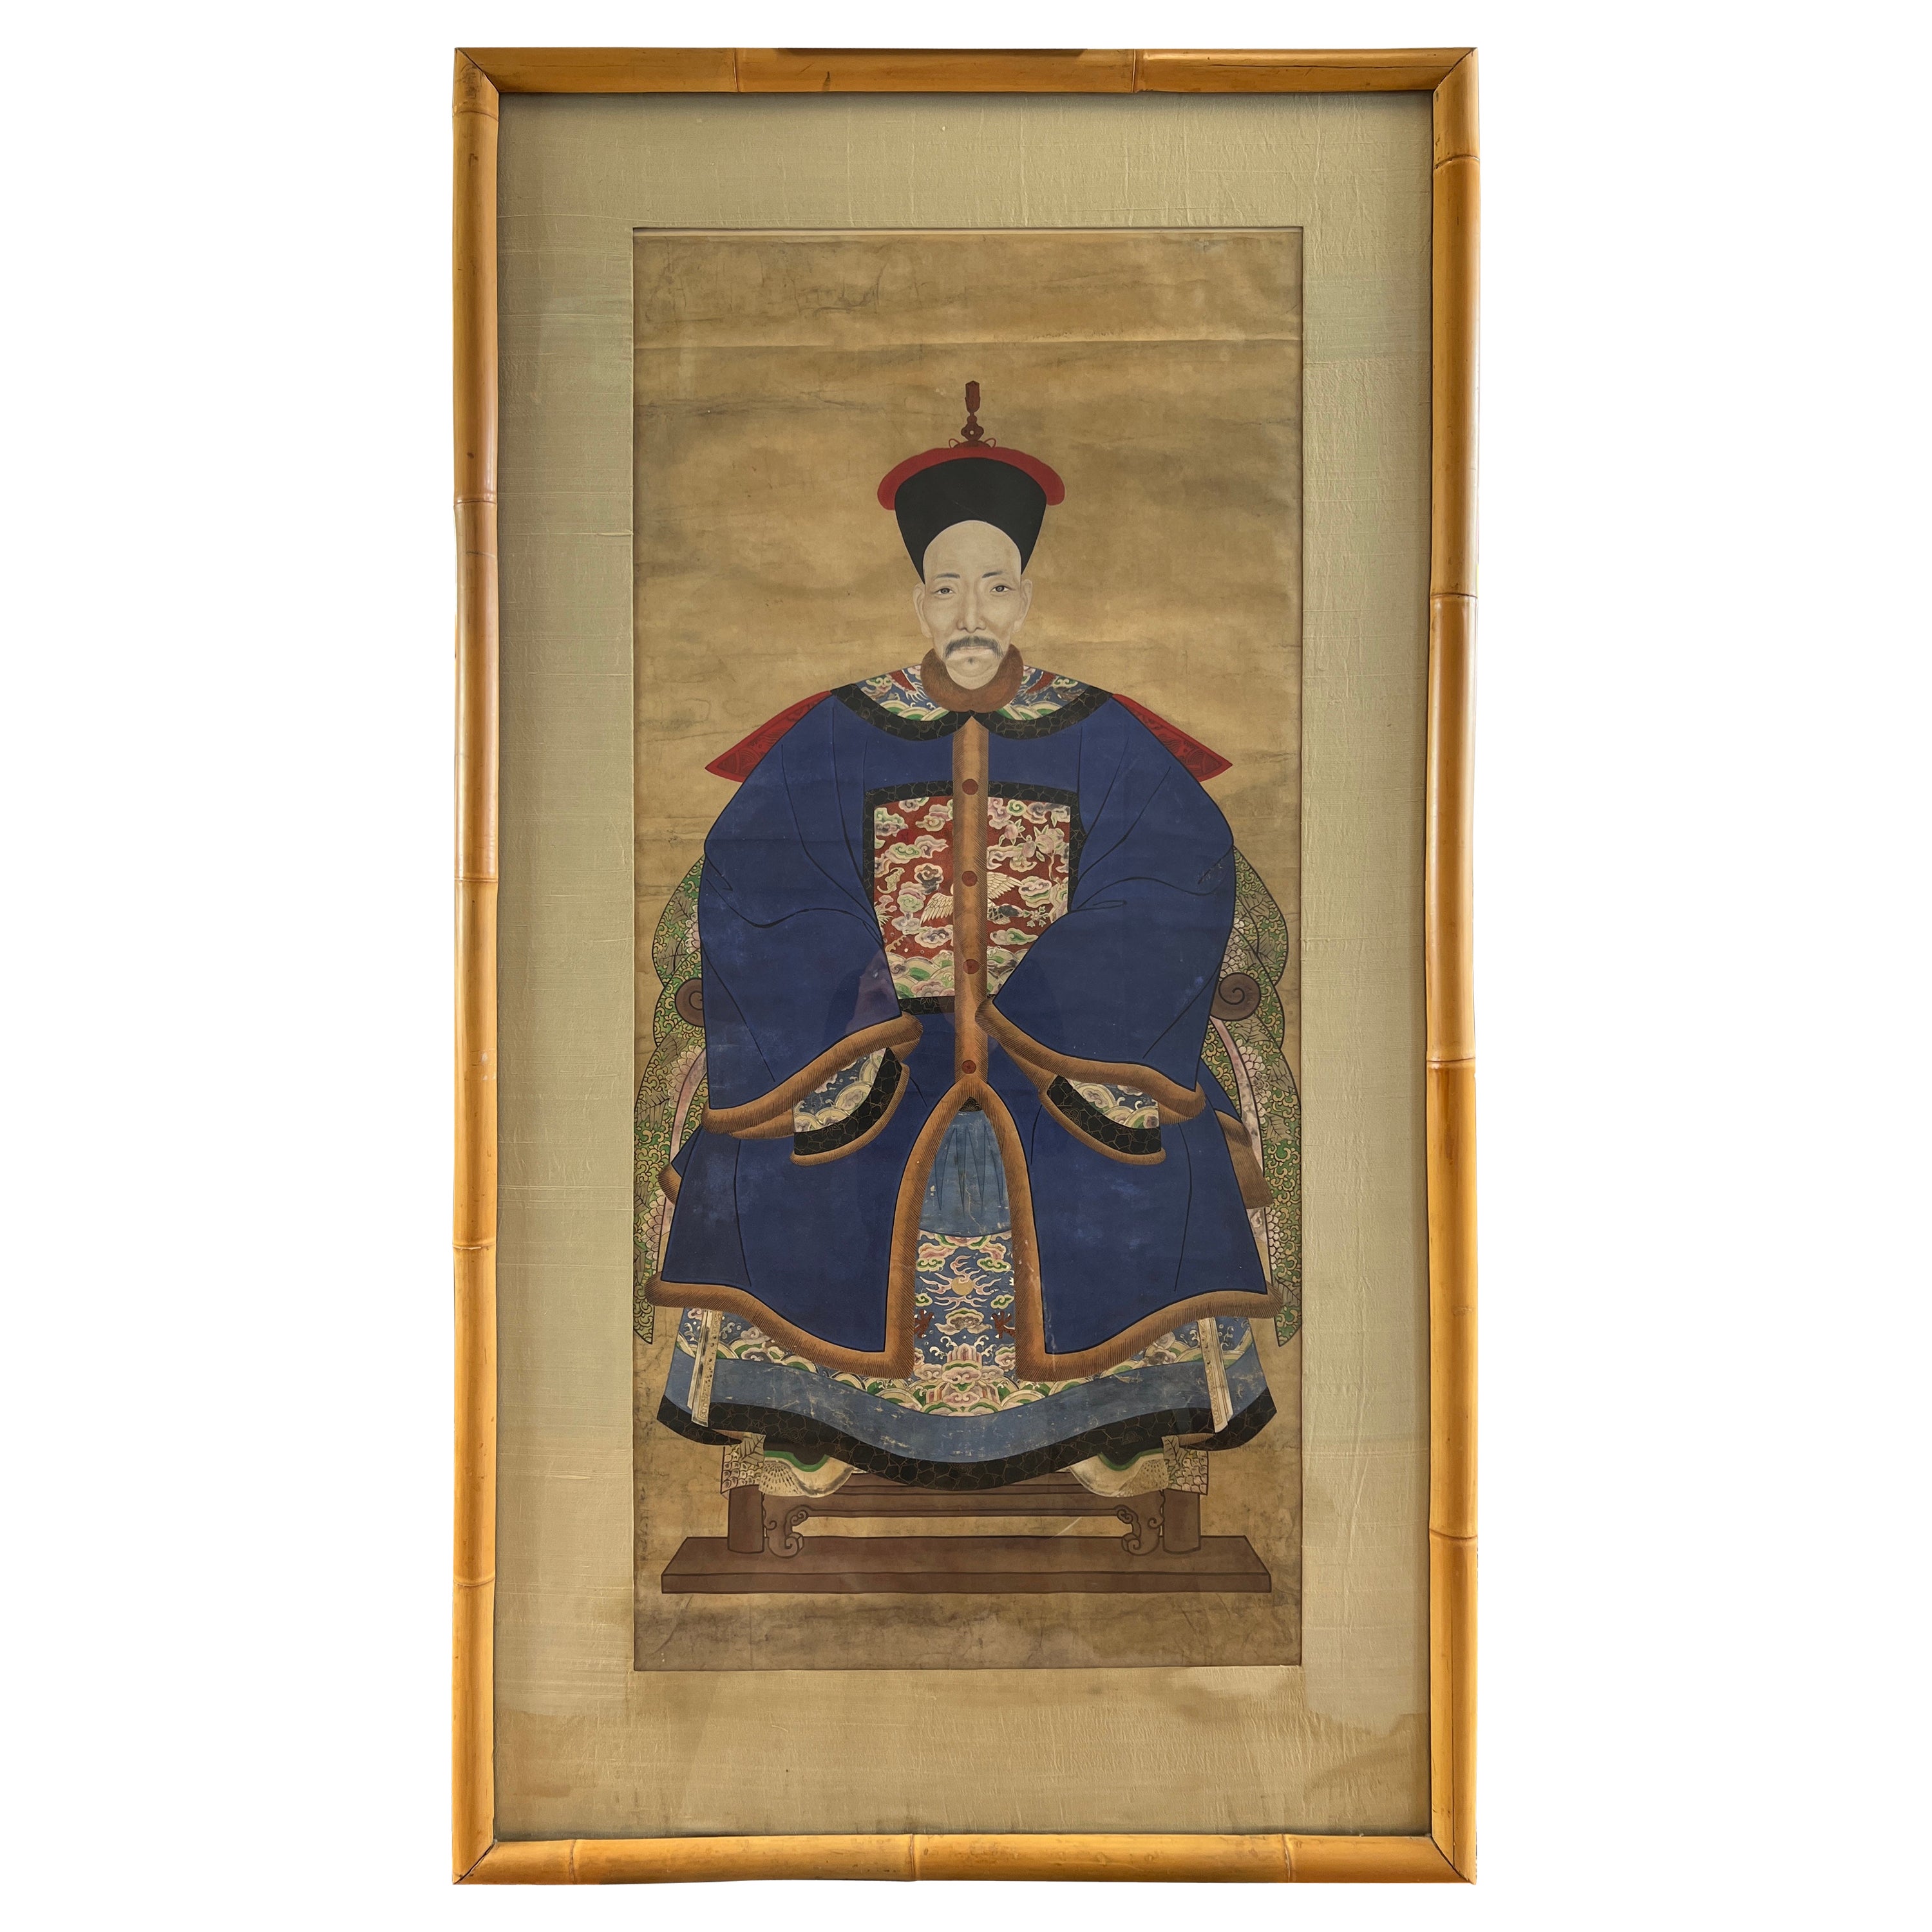 Chinesisches Ancestor-Porträt aus der chinesischen Qing-Dynastie, hochrangiger Offizieller erster Rang, 19. Jahrhundert